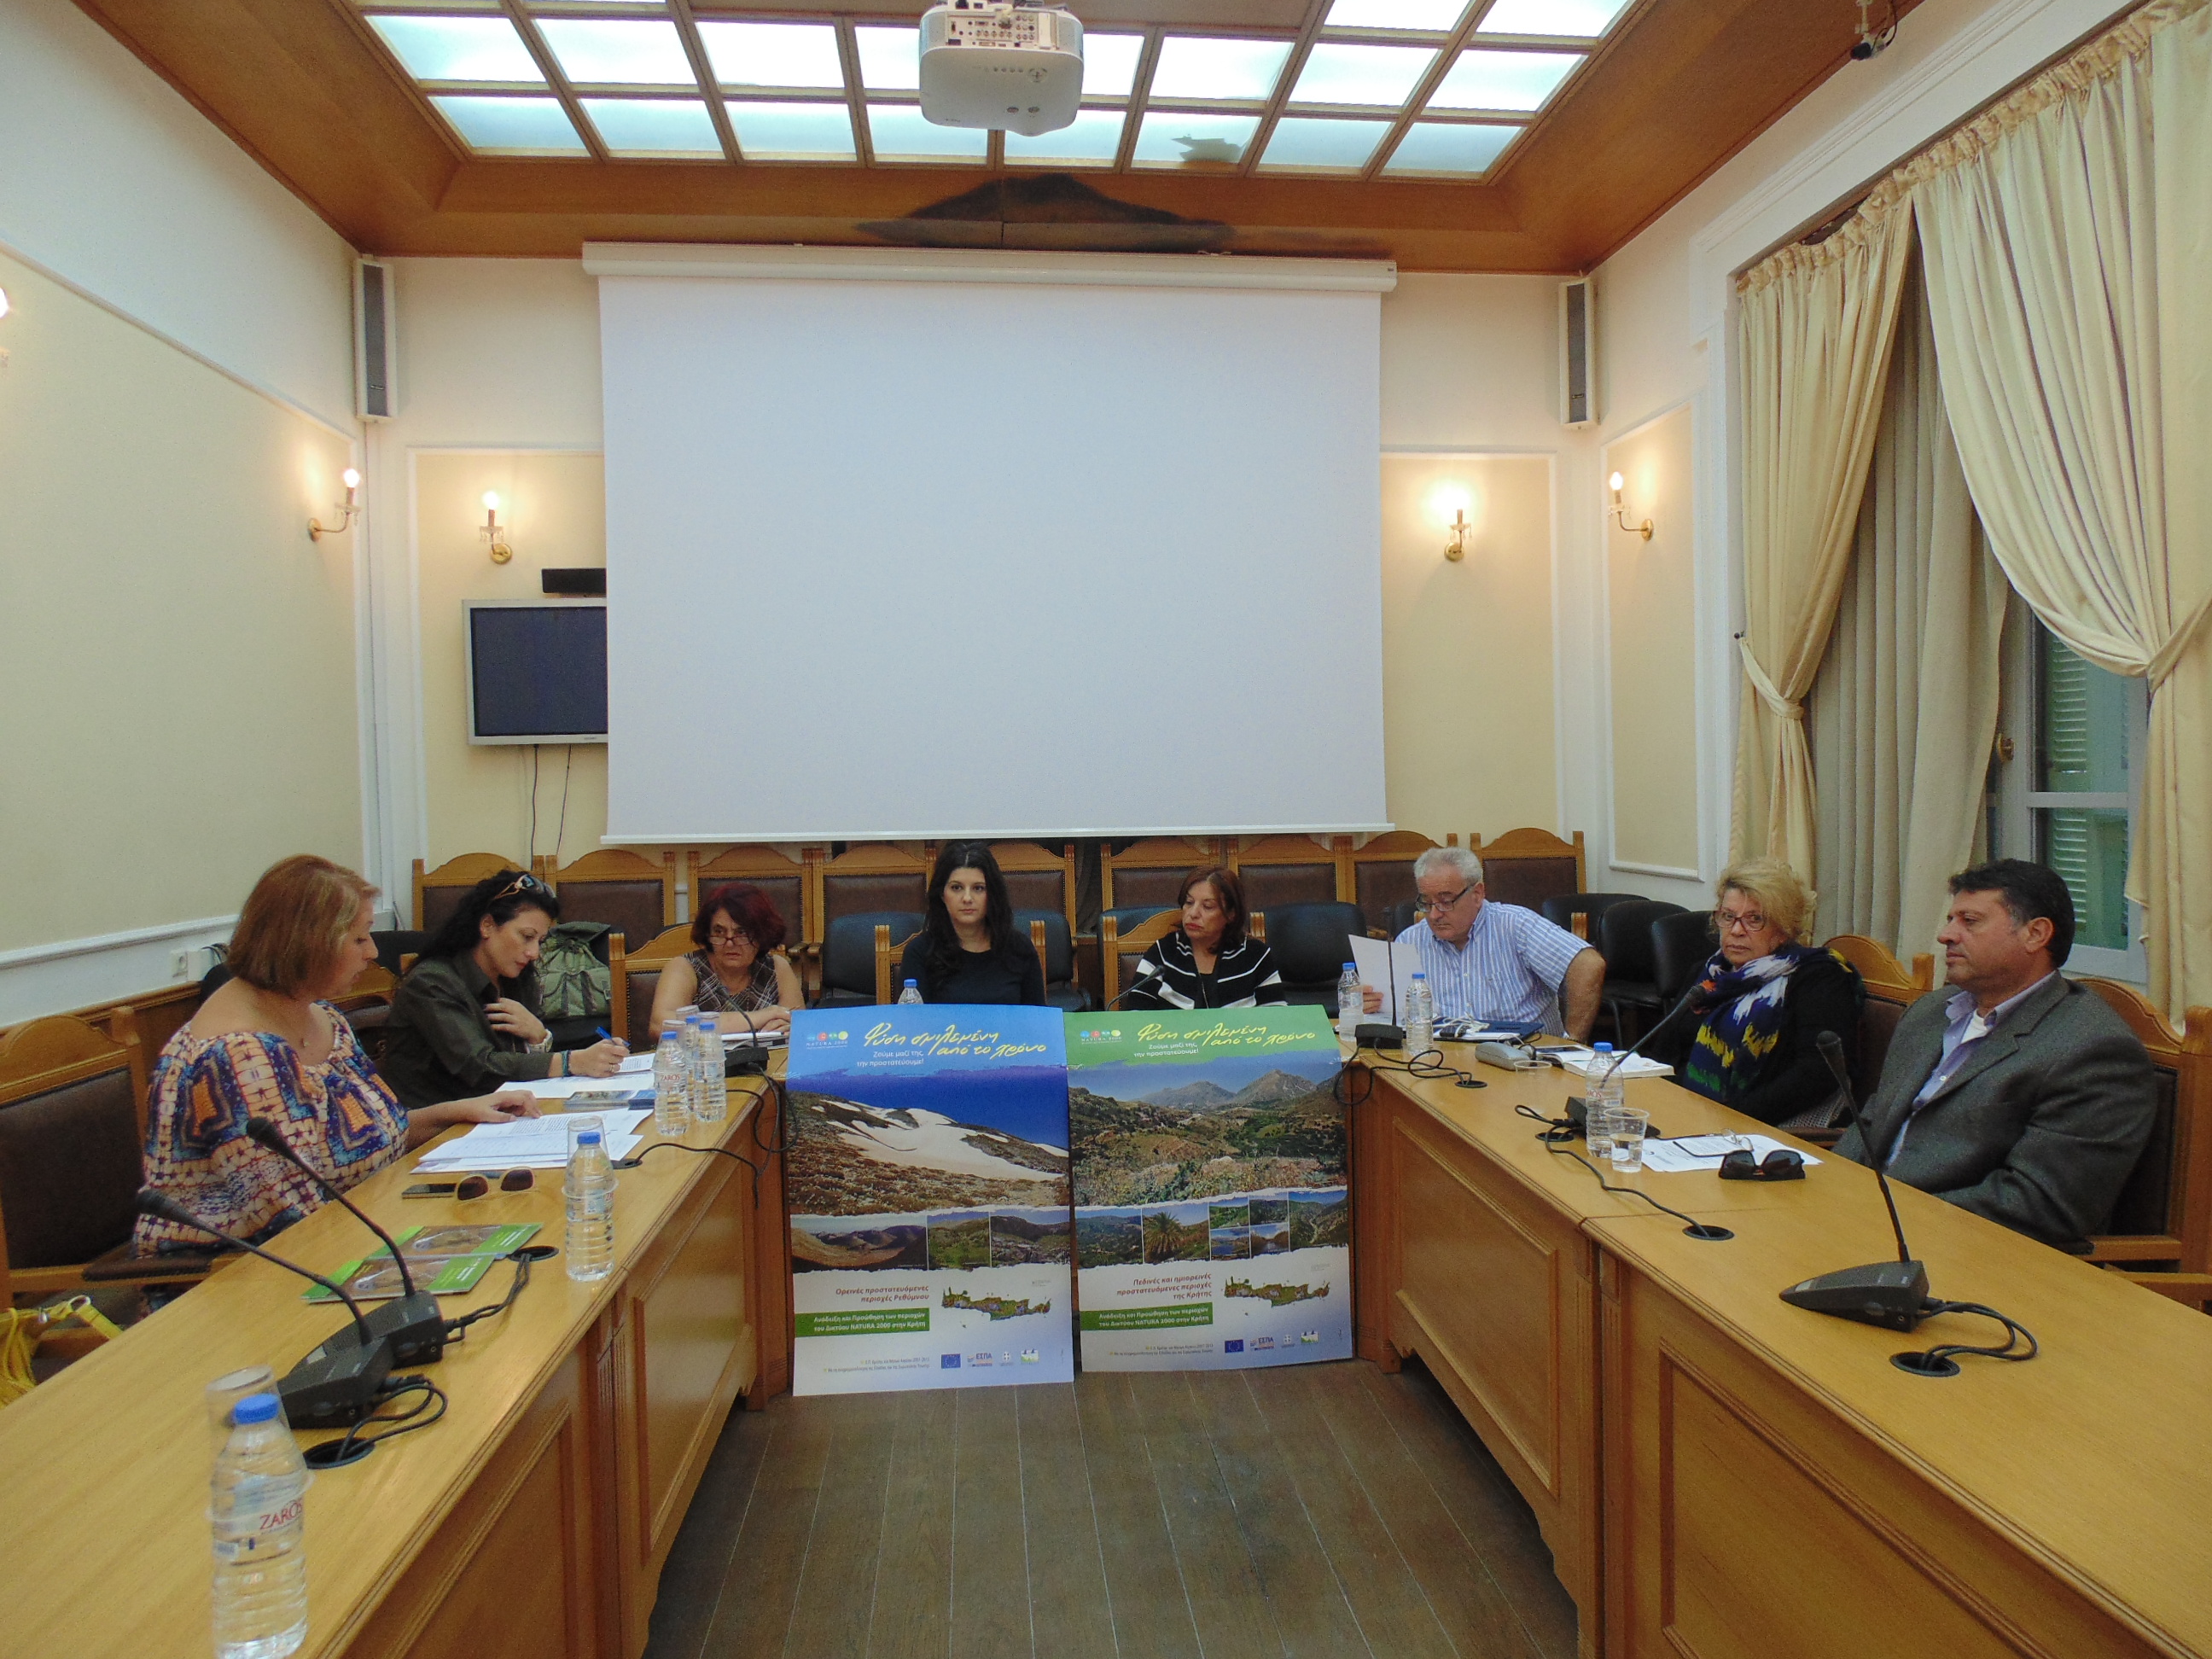 1η Συνεδρίαση της Επιτροπής Ισότητας Φύλλων της Περιφέρειας Κρήτης